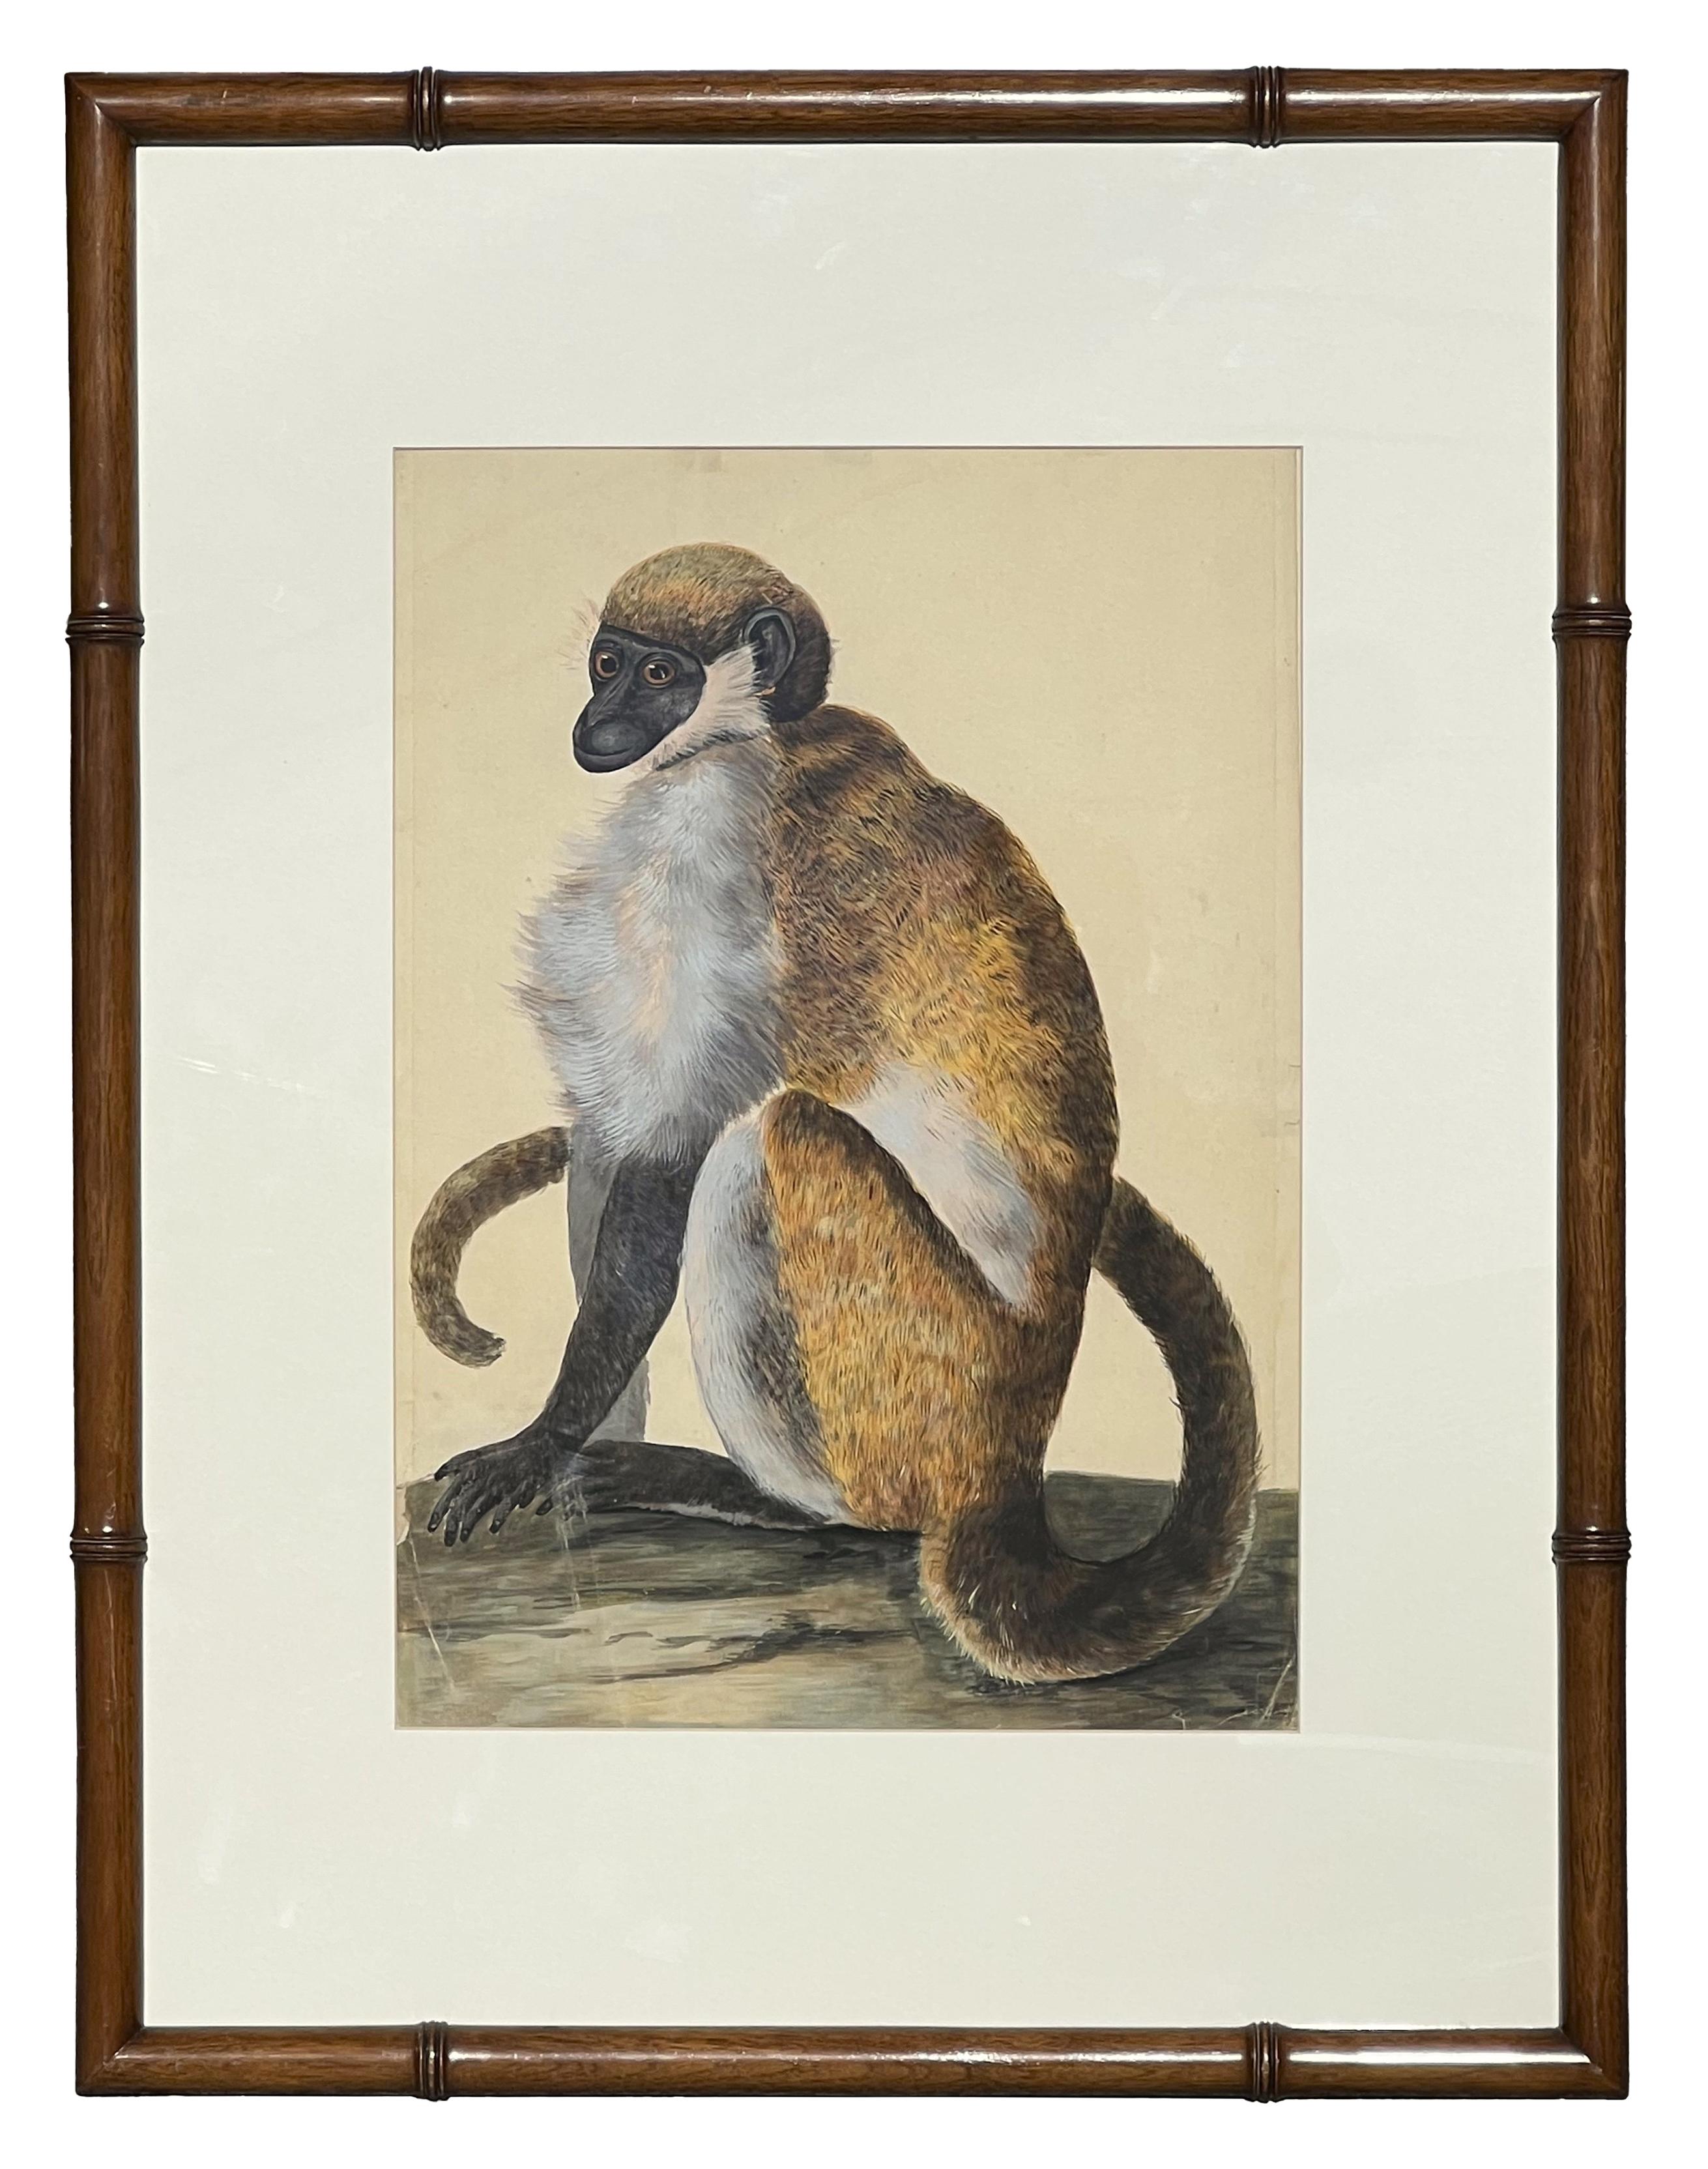 Animal Art Peter Paillou - Rendu animalier naturaliste précoce d'un singe capuchon possible